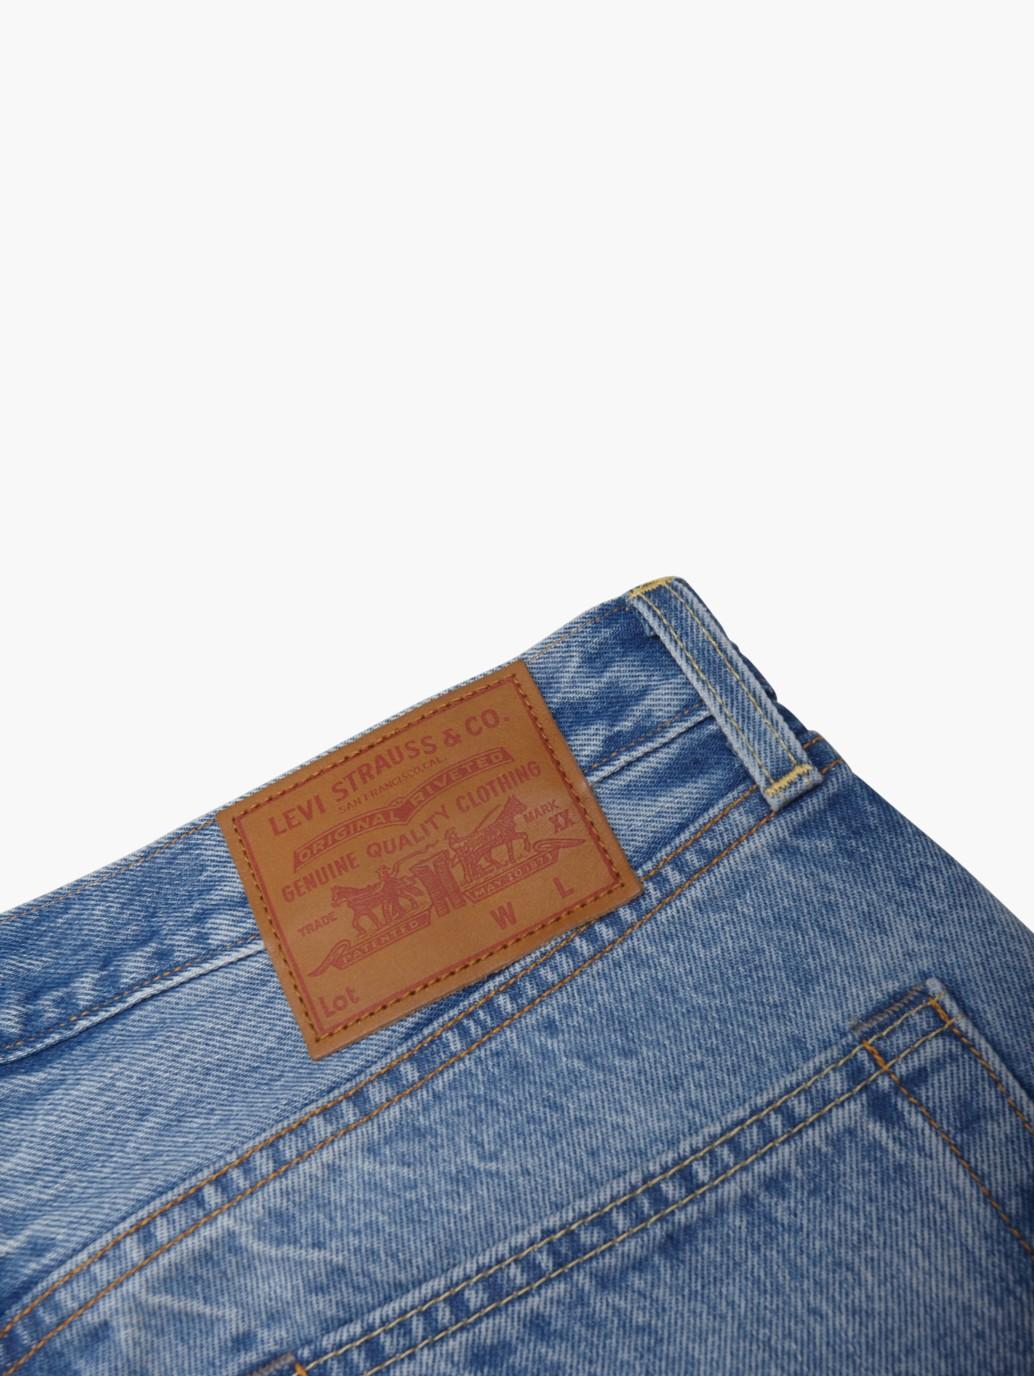 levis singapore mens 501 54 jeans A46770006 19 Details